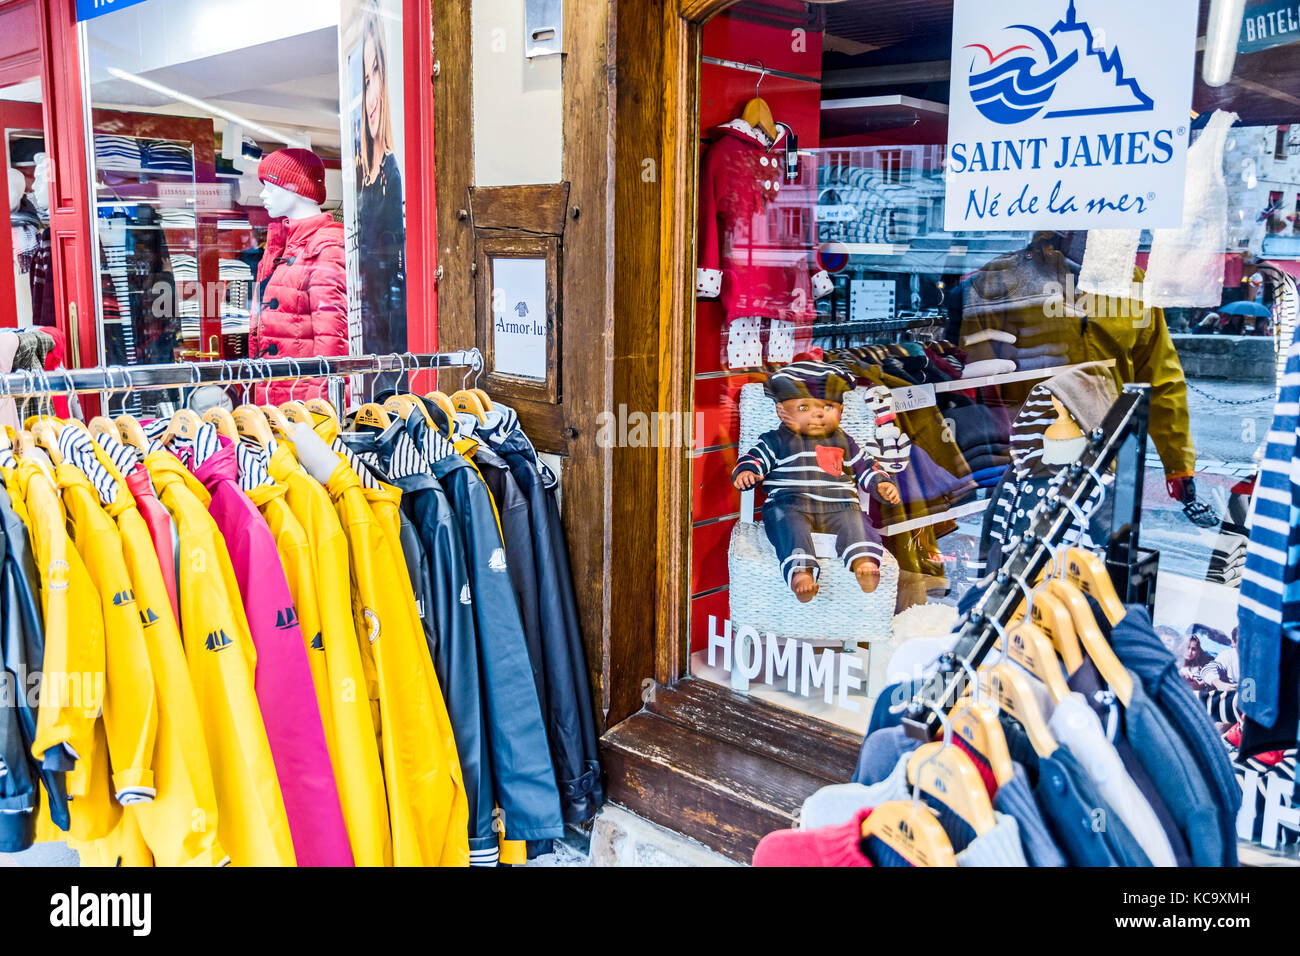 Honfleur (France): Shop with typical attire for the sea; Geschäft mit typischen Produkten für Urlaub am Meer Stock Photo